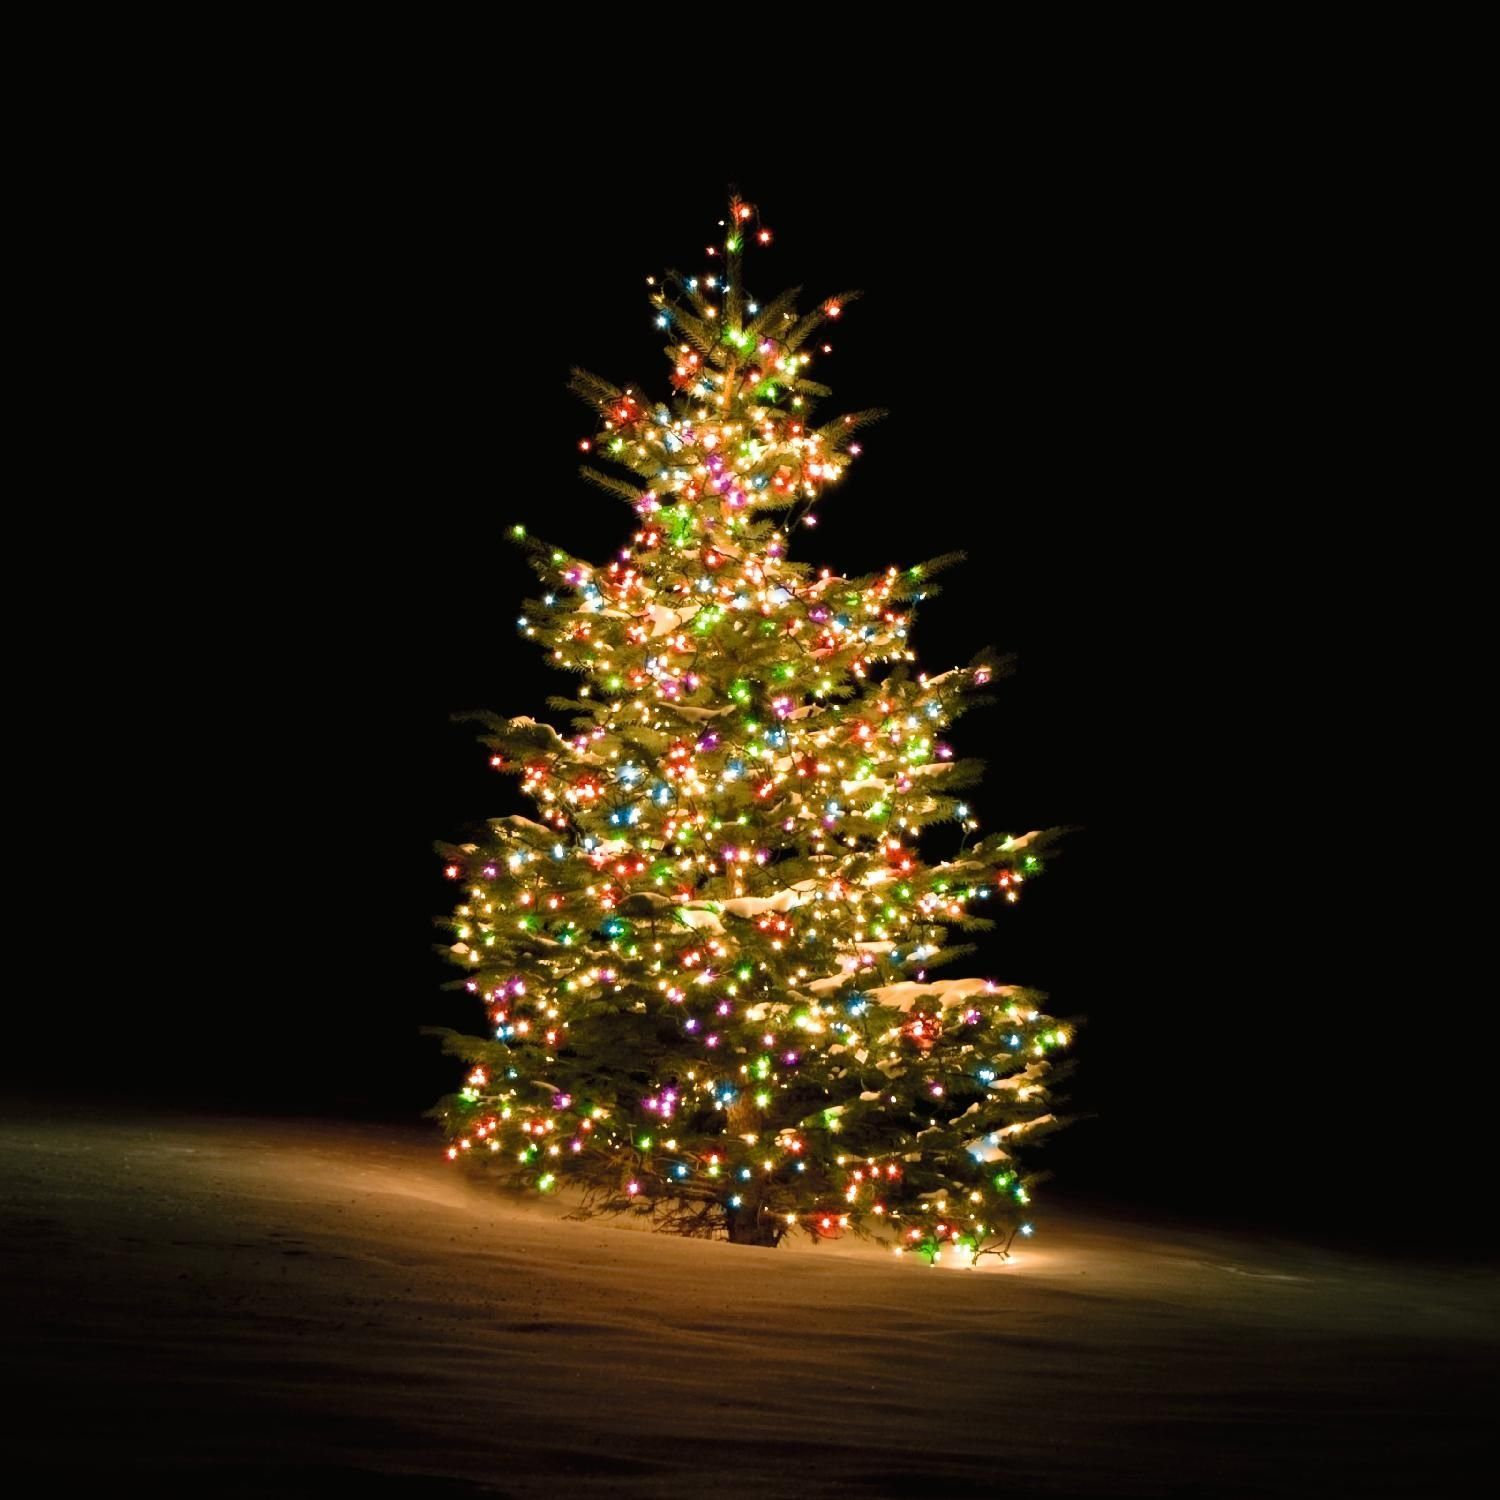 DELTACO SMART HOME LED-Lichterkette Smarte Weihnachtsbaum-Lichterkette RGB mit 300 LEDs 2 m mehrfarbig, inkl. 5 Jahre Herstellergarantie